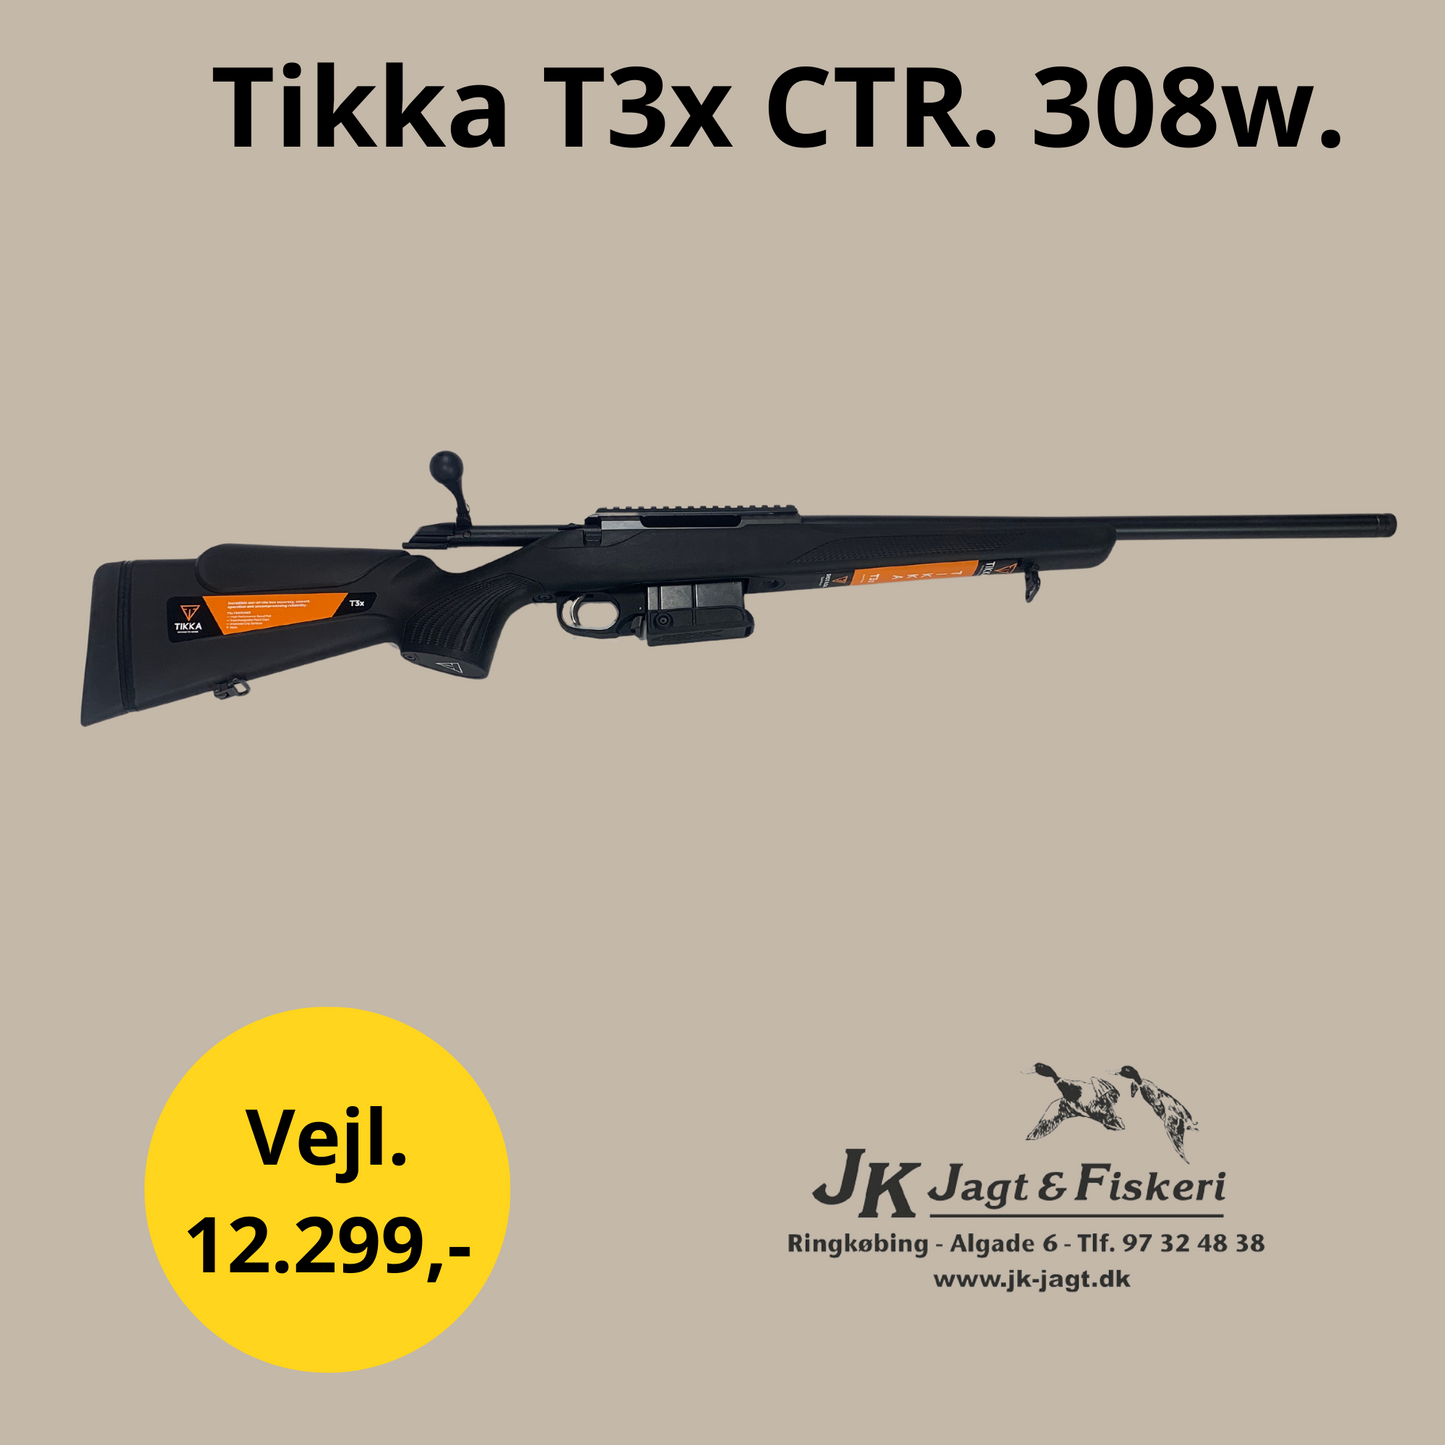 Tikka T3x CTR. 308w.